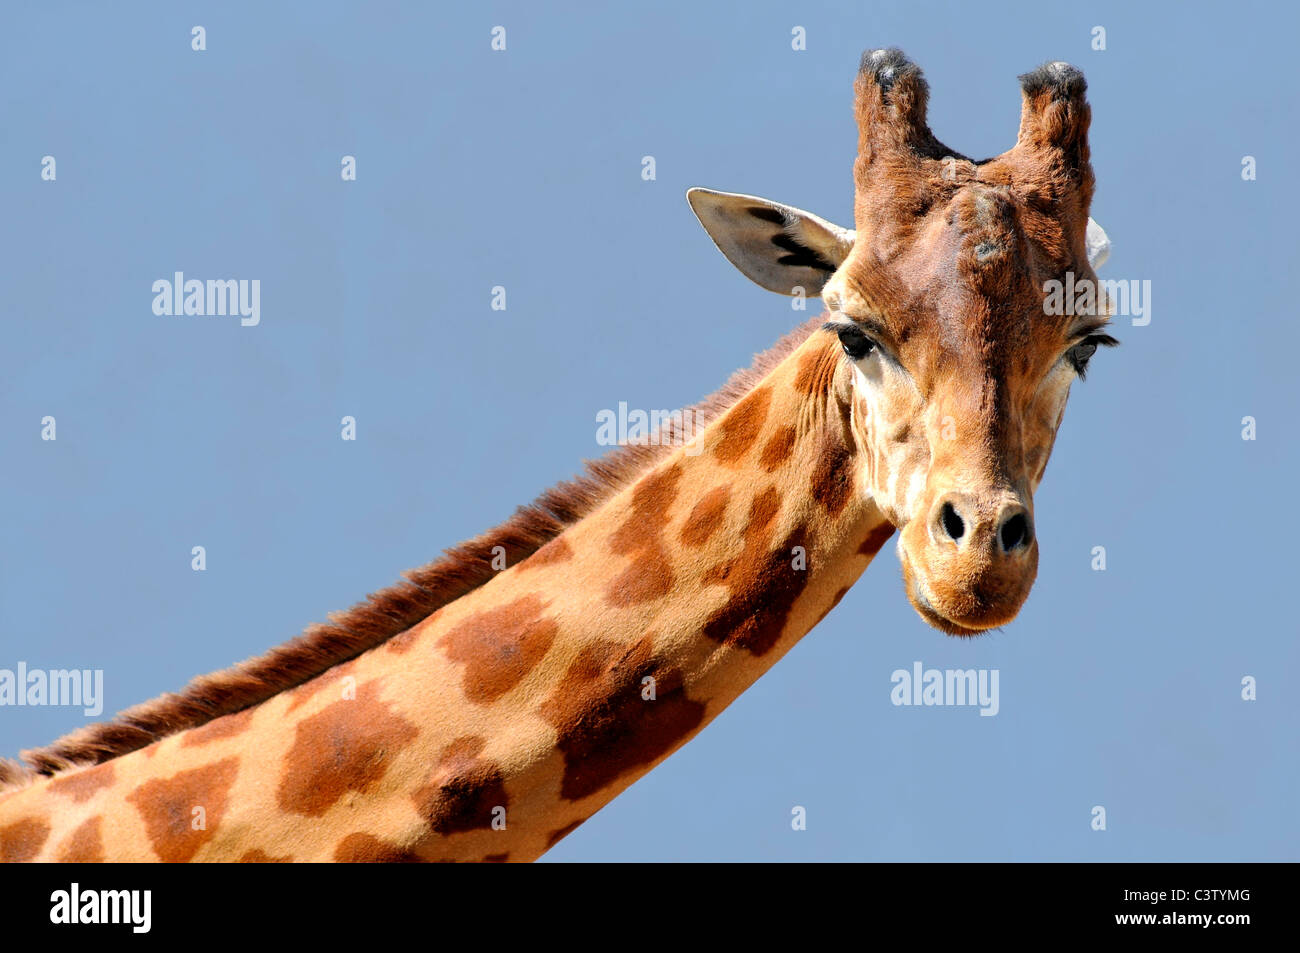 Retrato de jirafa (Camelopardalis) sobre fondo de cielo azul Foto de stock